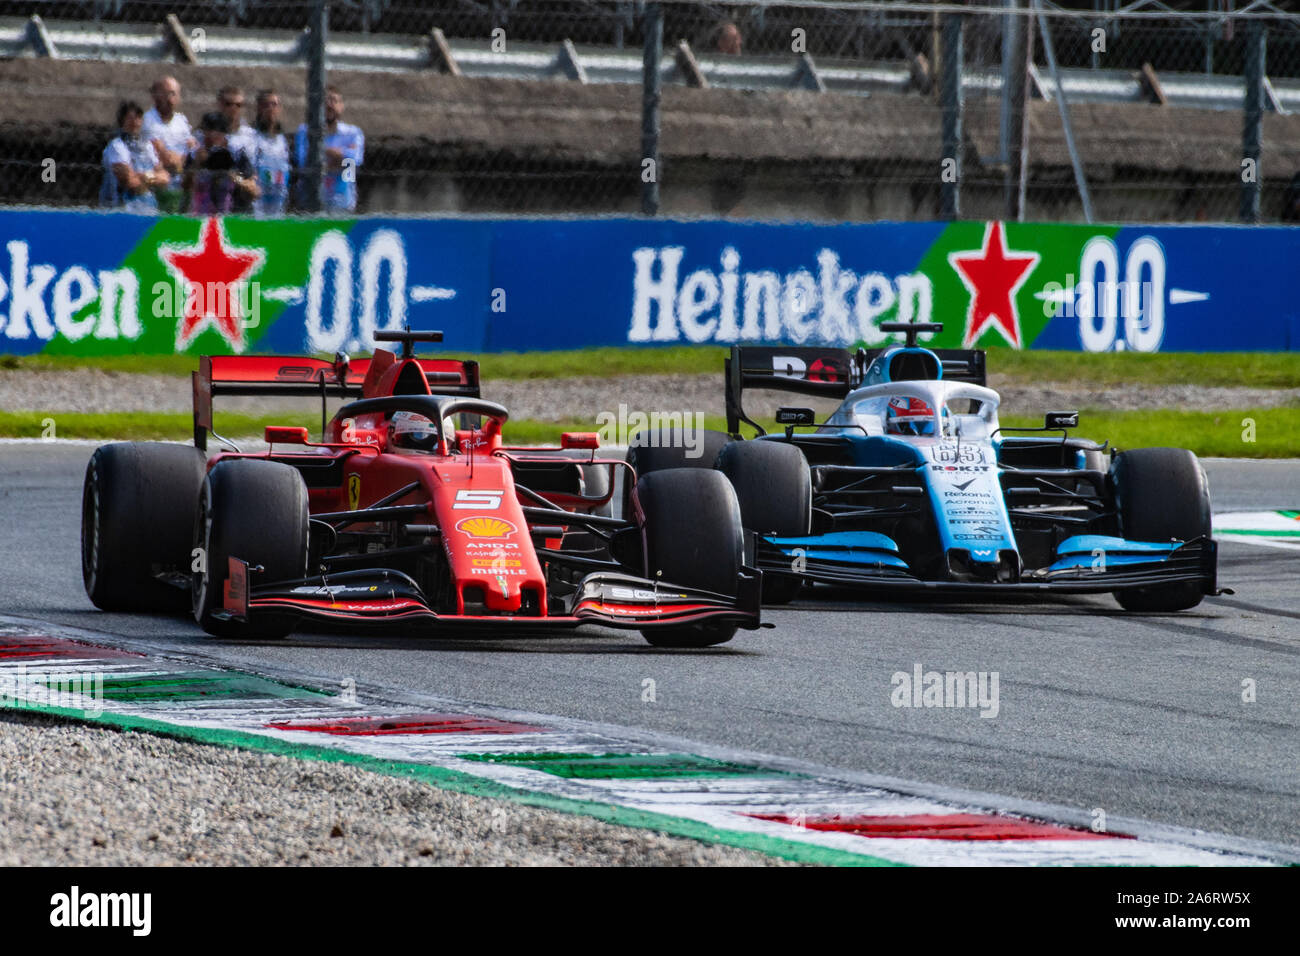 Italia/Monza - 08/09/2019 - #5 Sebastian Vettel (GER, del team Scuderia Ferrari, SF90) e #63 George Russell (GBR, Team Williams FW42) durante l'italiano Foto Stock